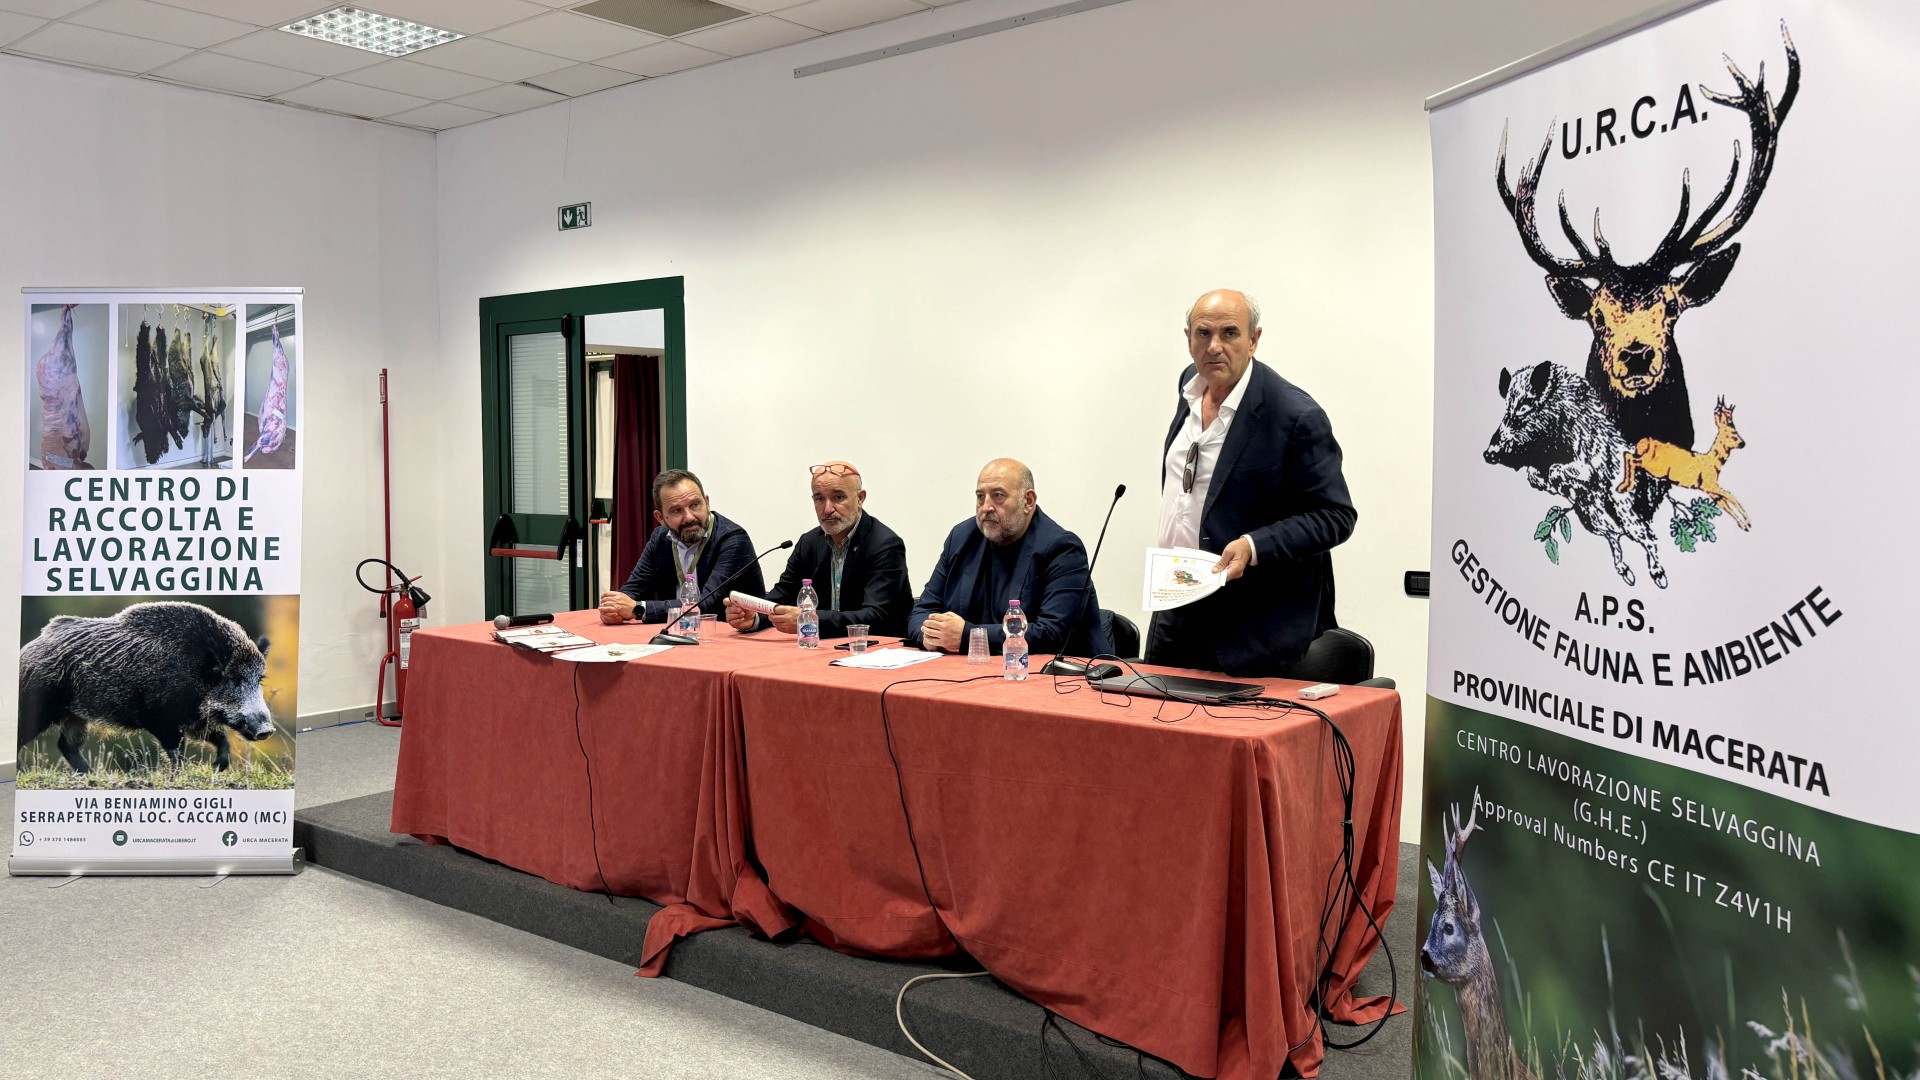 Il progetto di filiera di Regione Marche mette al centro il cacciatore. Non a caso  stato sviluppato insieme all'associazione URCA - Gestione fauna e ambiente